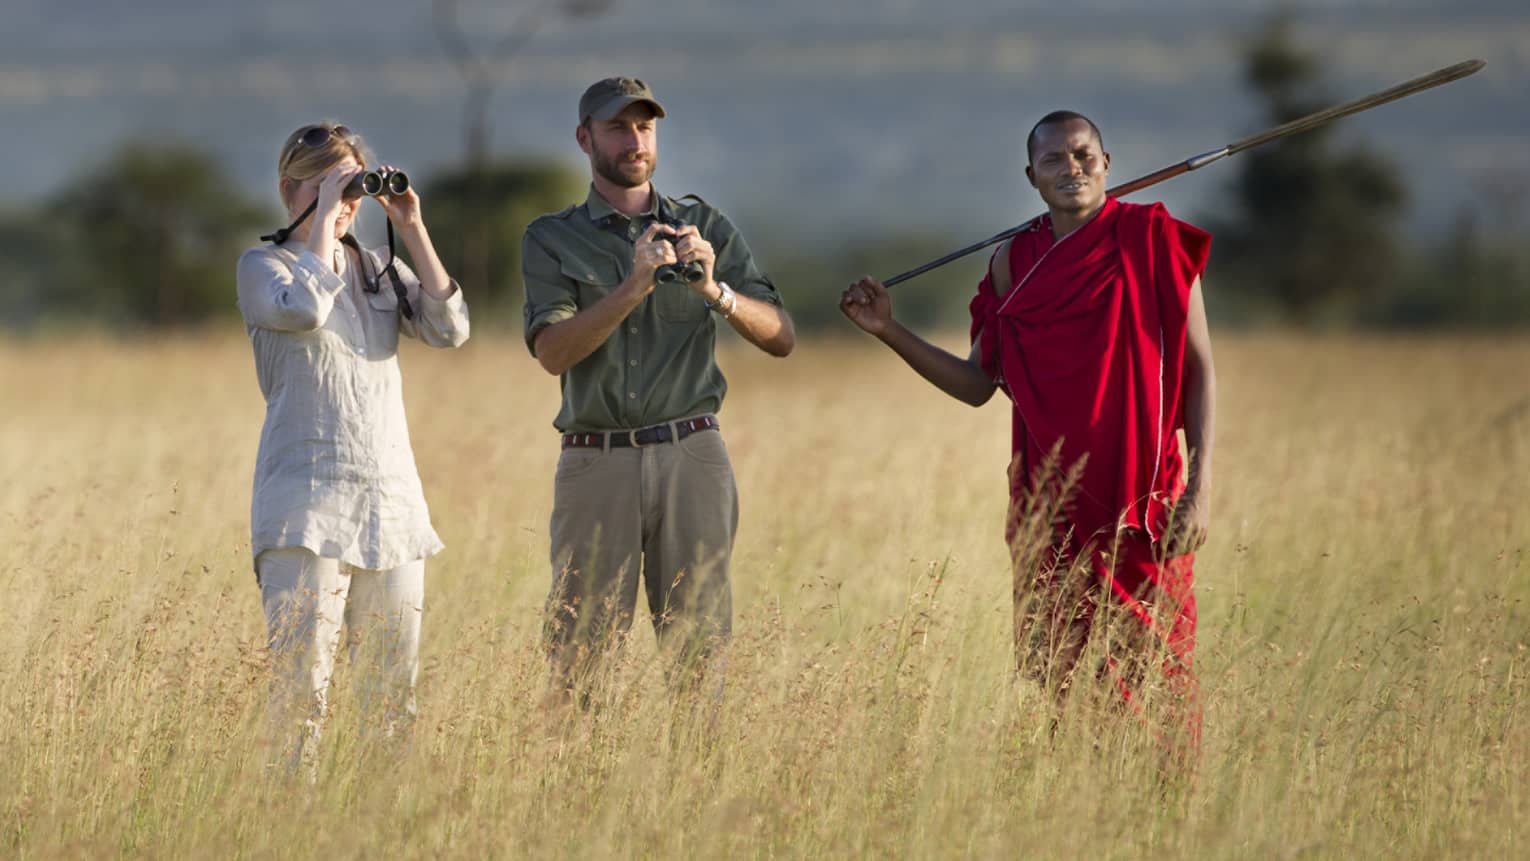 Couple takes photos on walking safari through tall grass with guides